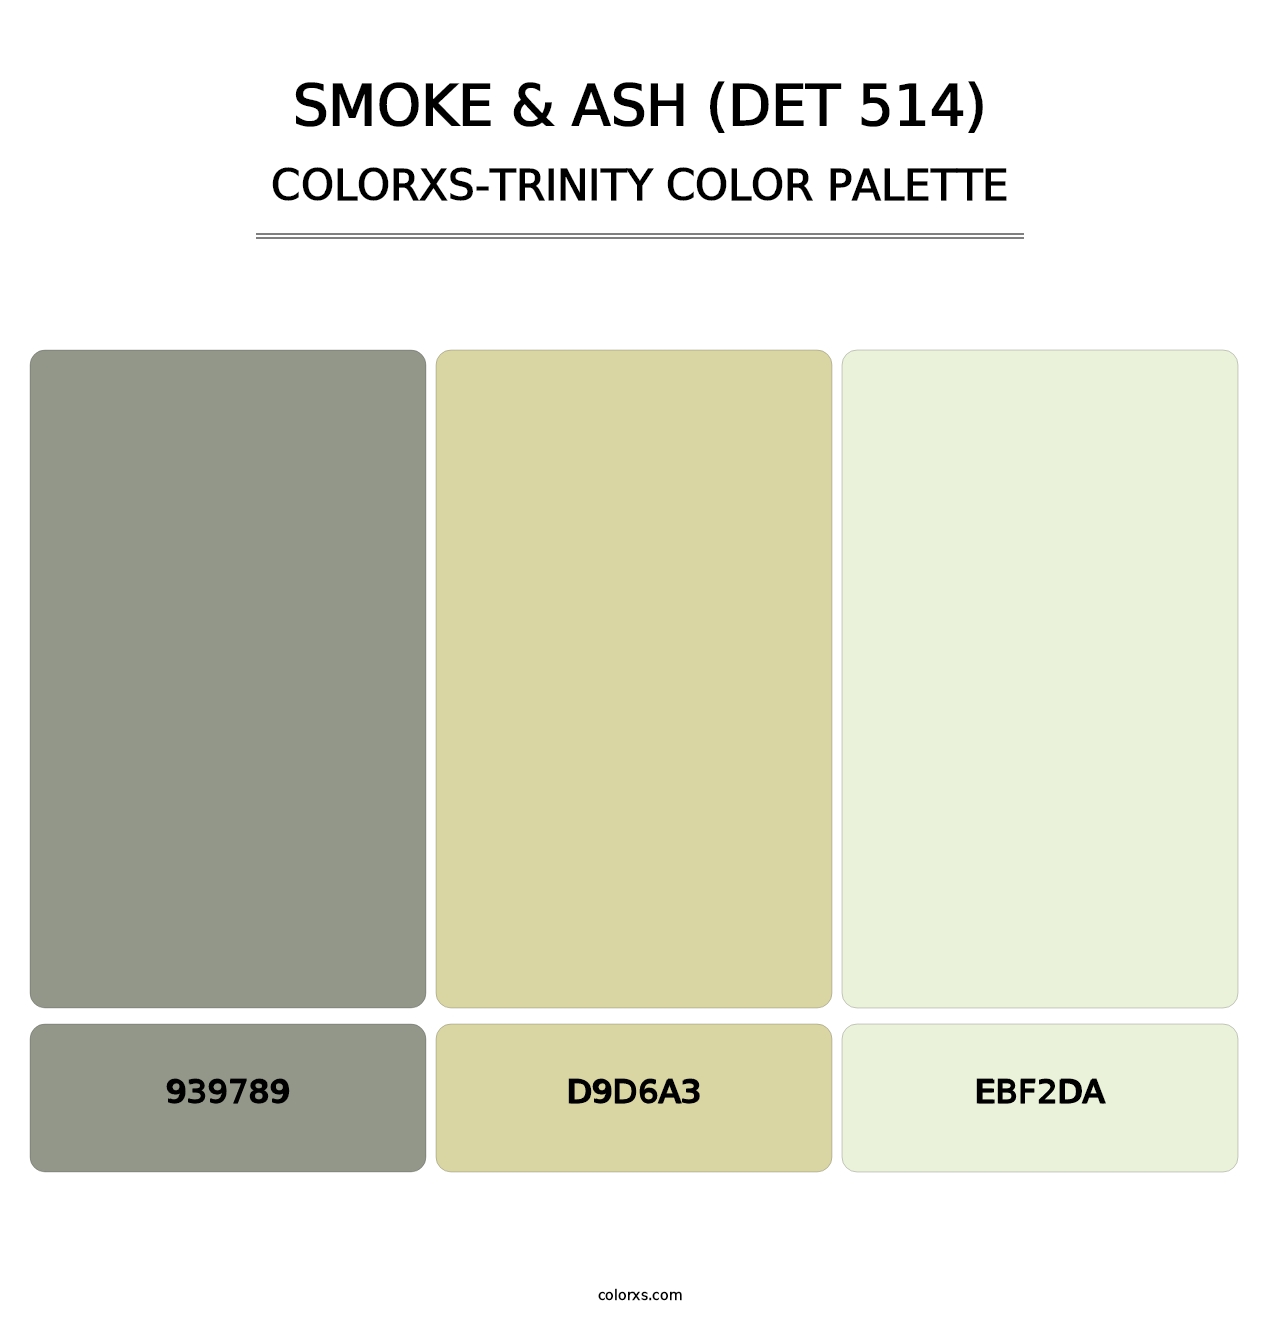 Smoke & Ash (DET 514) - Colorxs Trinity Palette